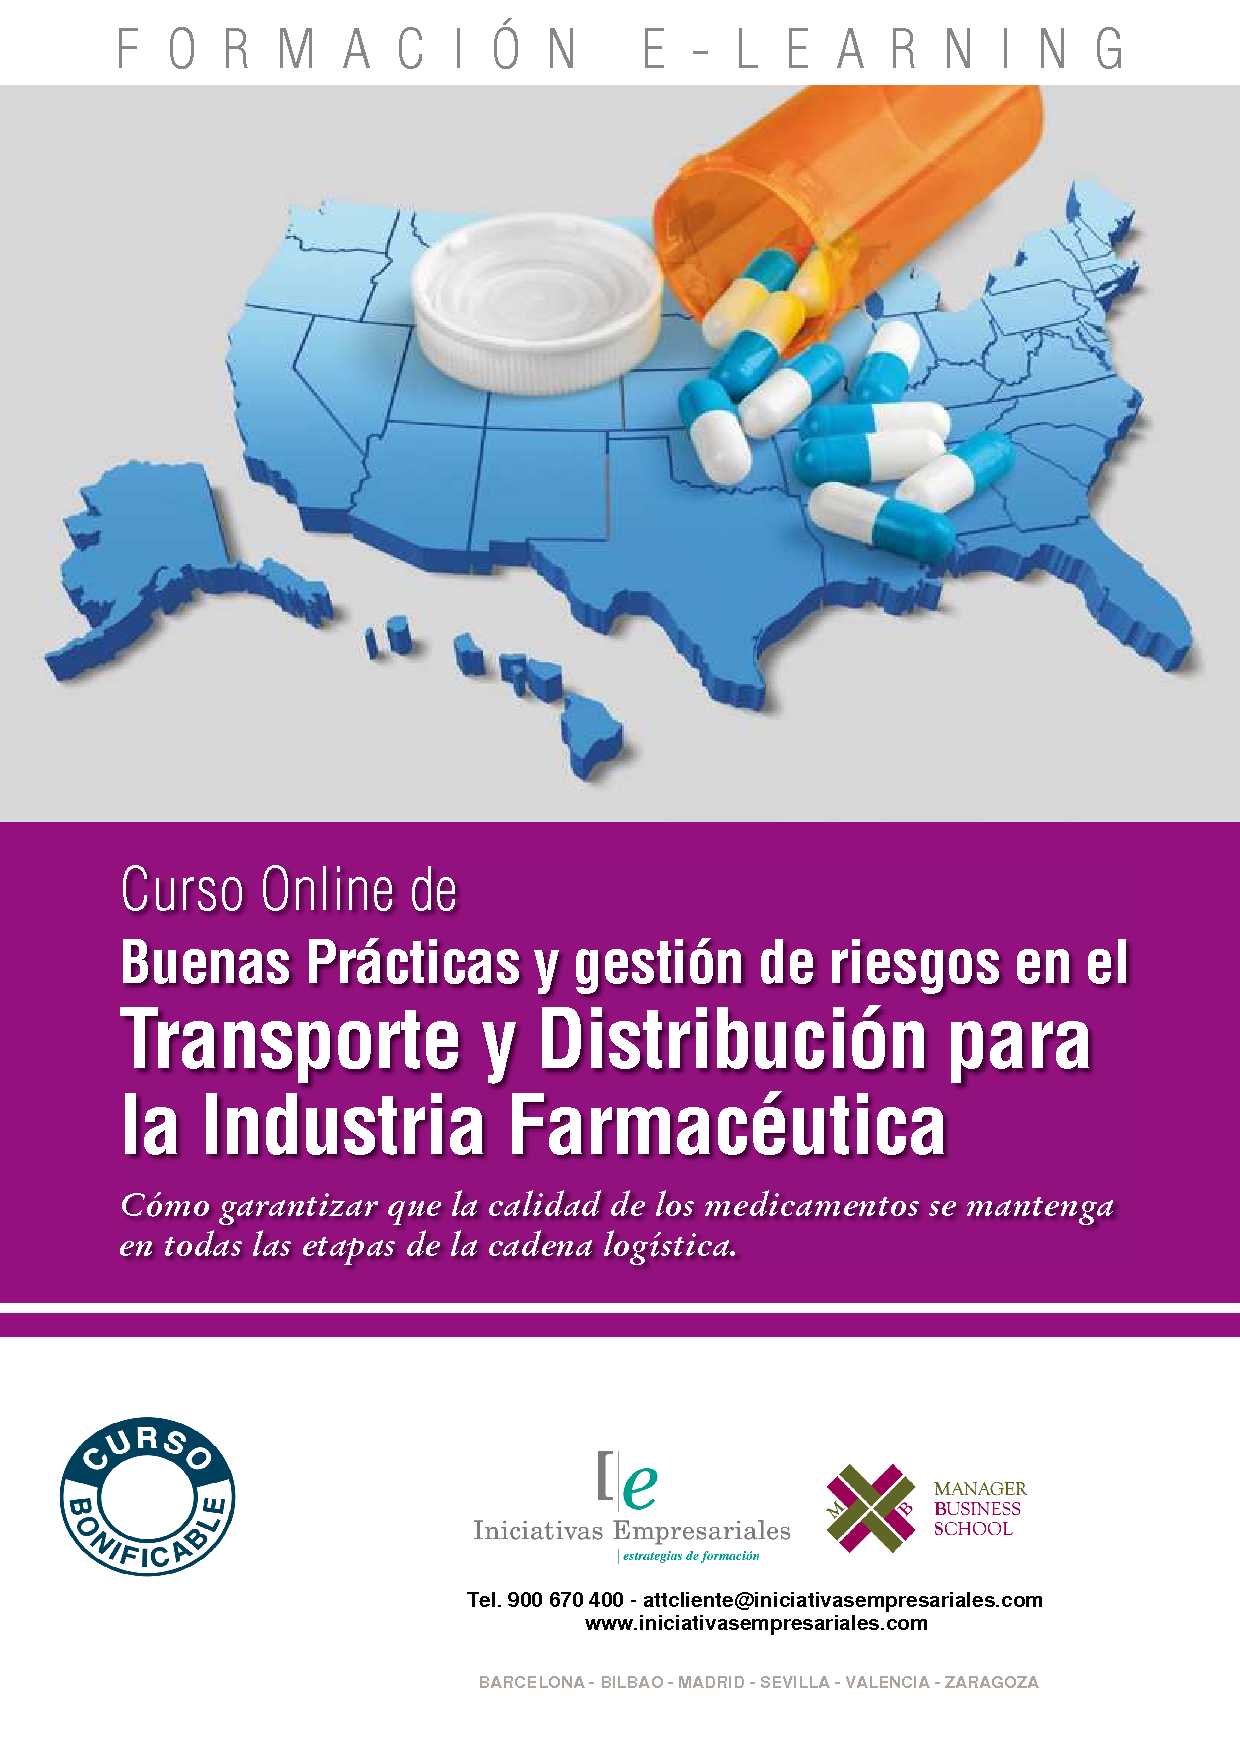 Buenas Prácticas y gestión de riesgos en el Transporte y Distribución para la Industria Farmacéutica